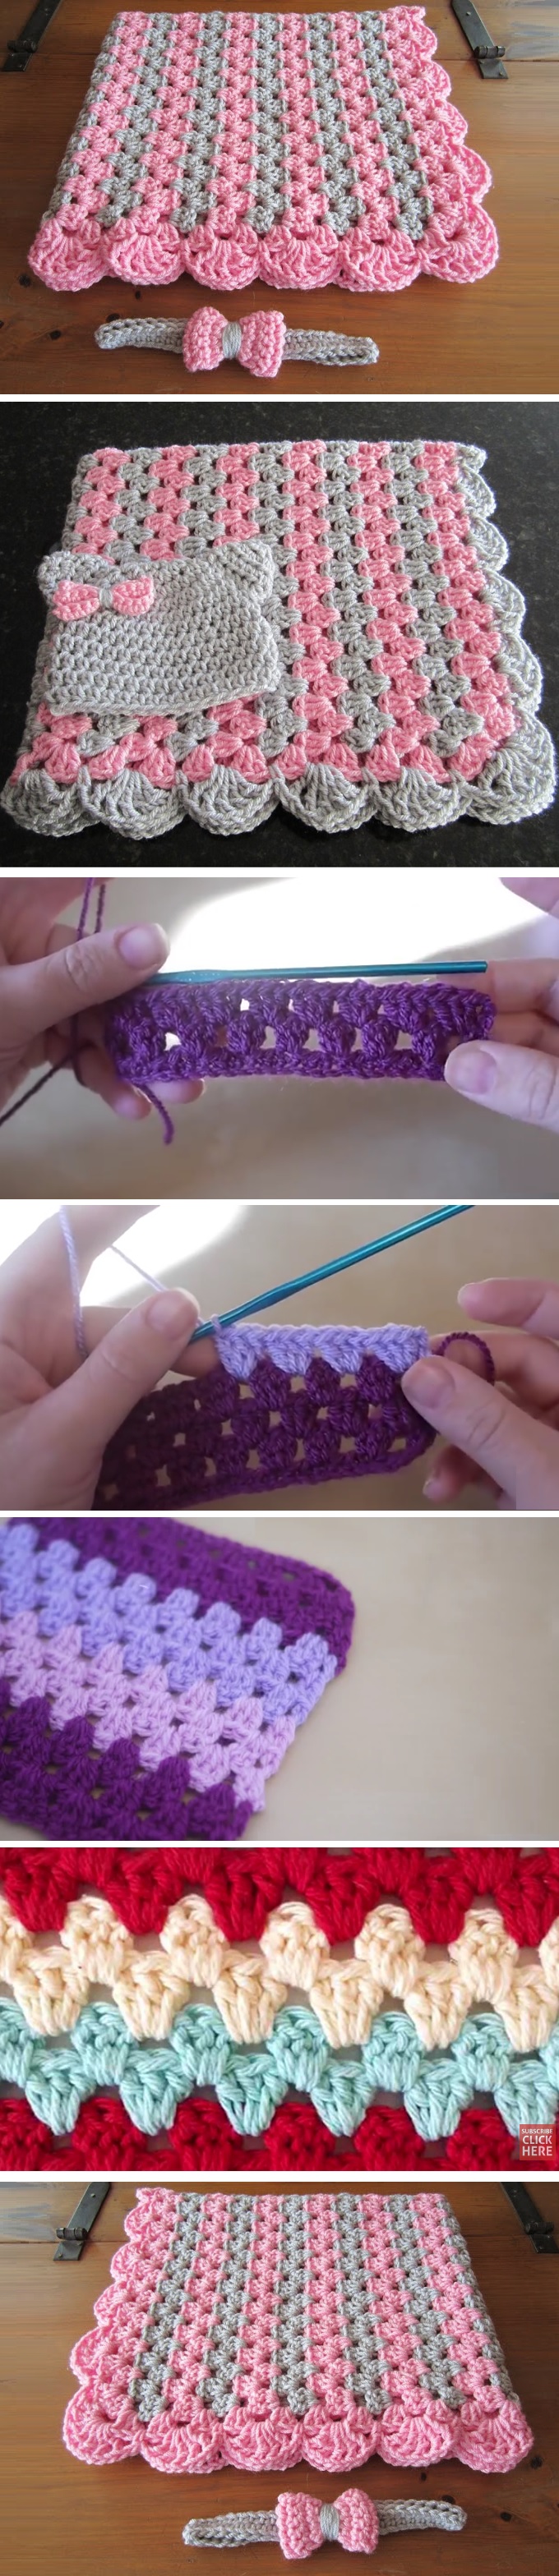 How to crochet zigzag stitch